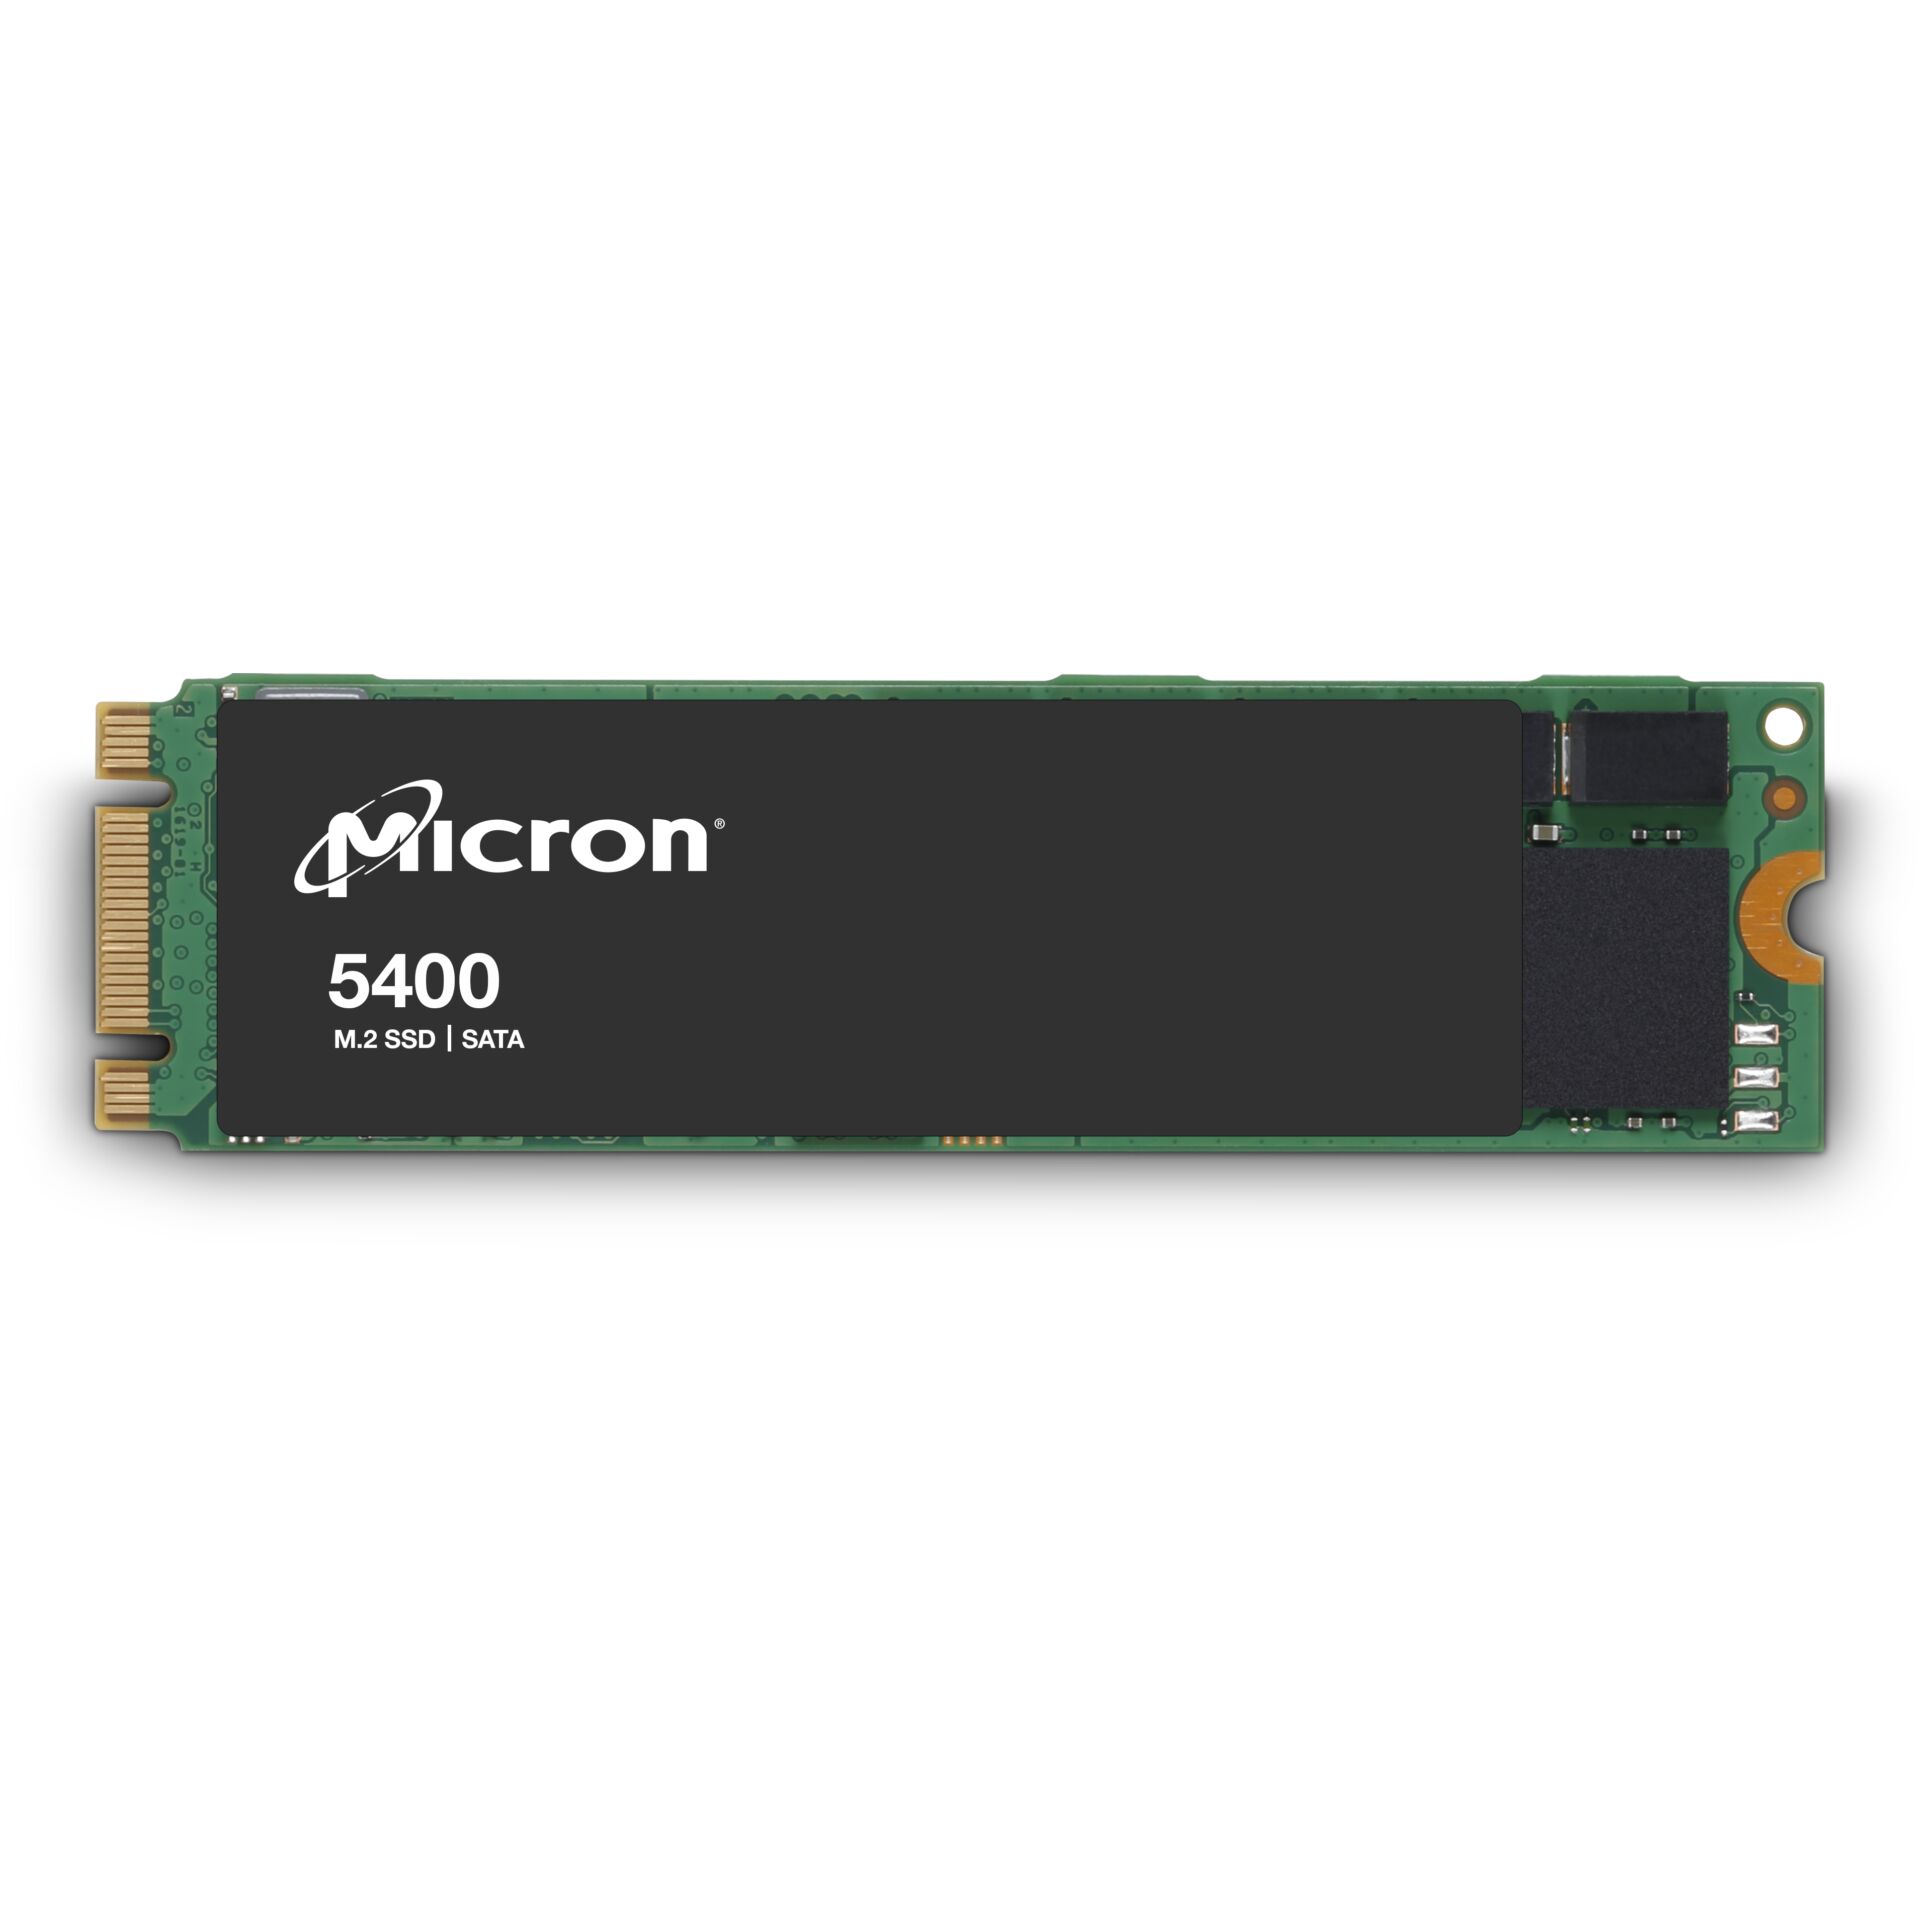 Micron 5400 BOOT           240GB SATA M.2 Enterprise SSD